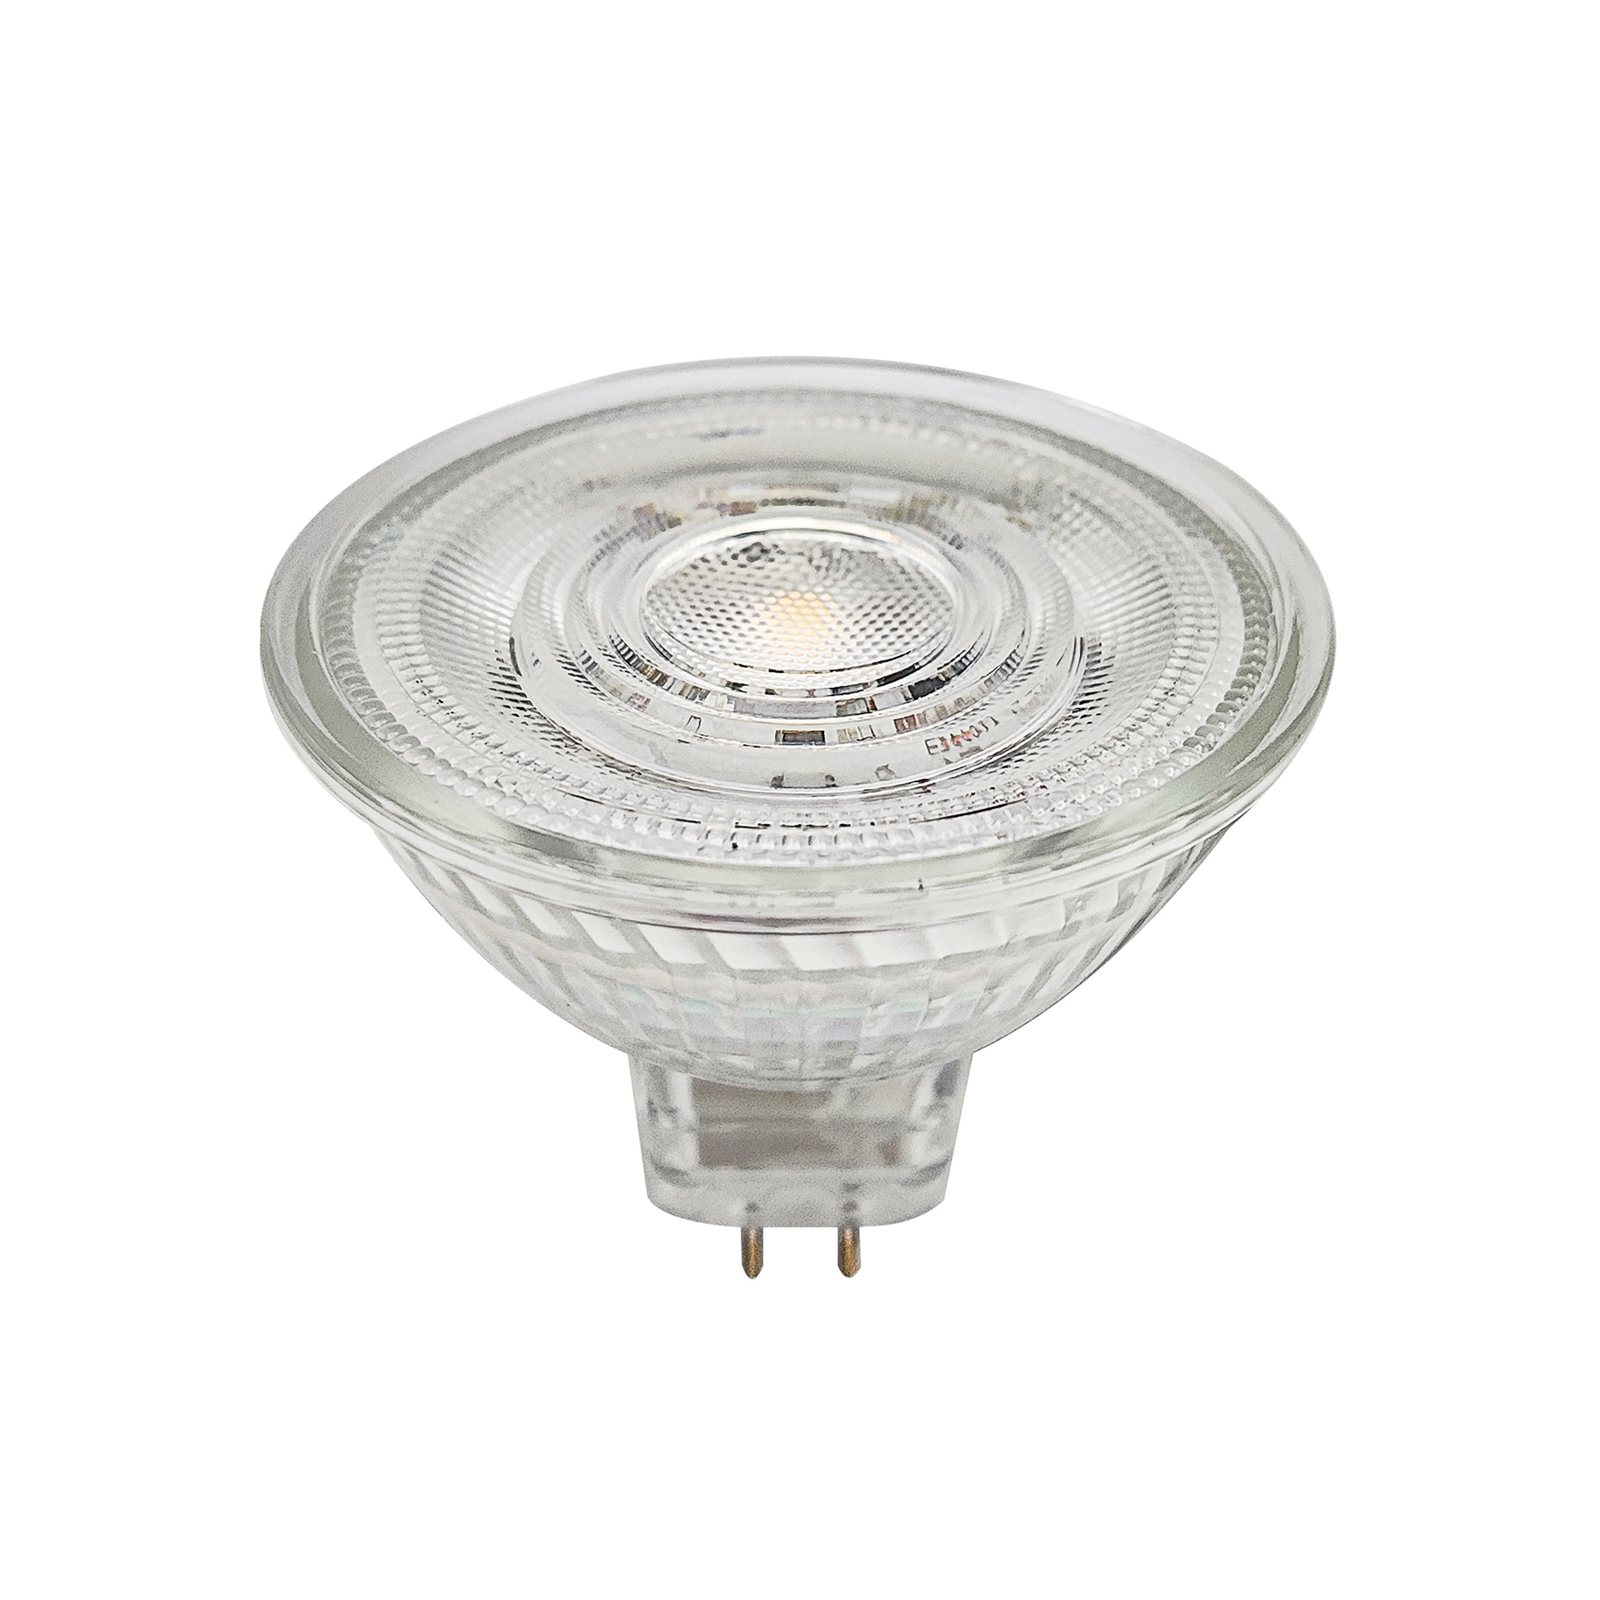 Prios GU5.3 LED bulb 4.9W 500lm 36° clear 840 set of 10